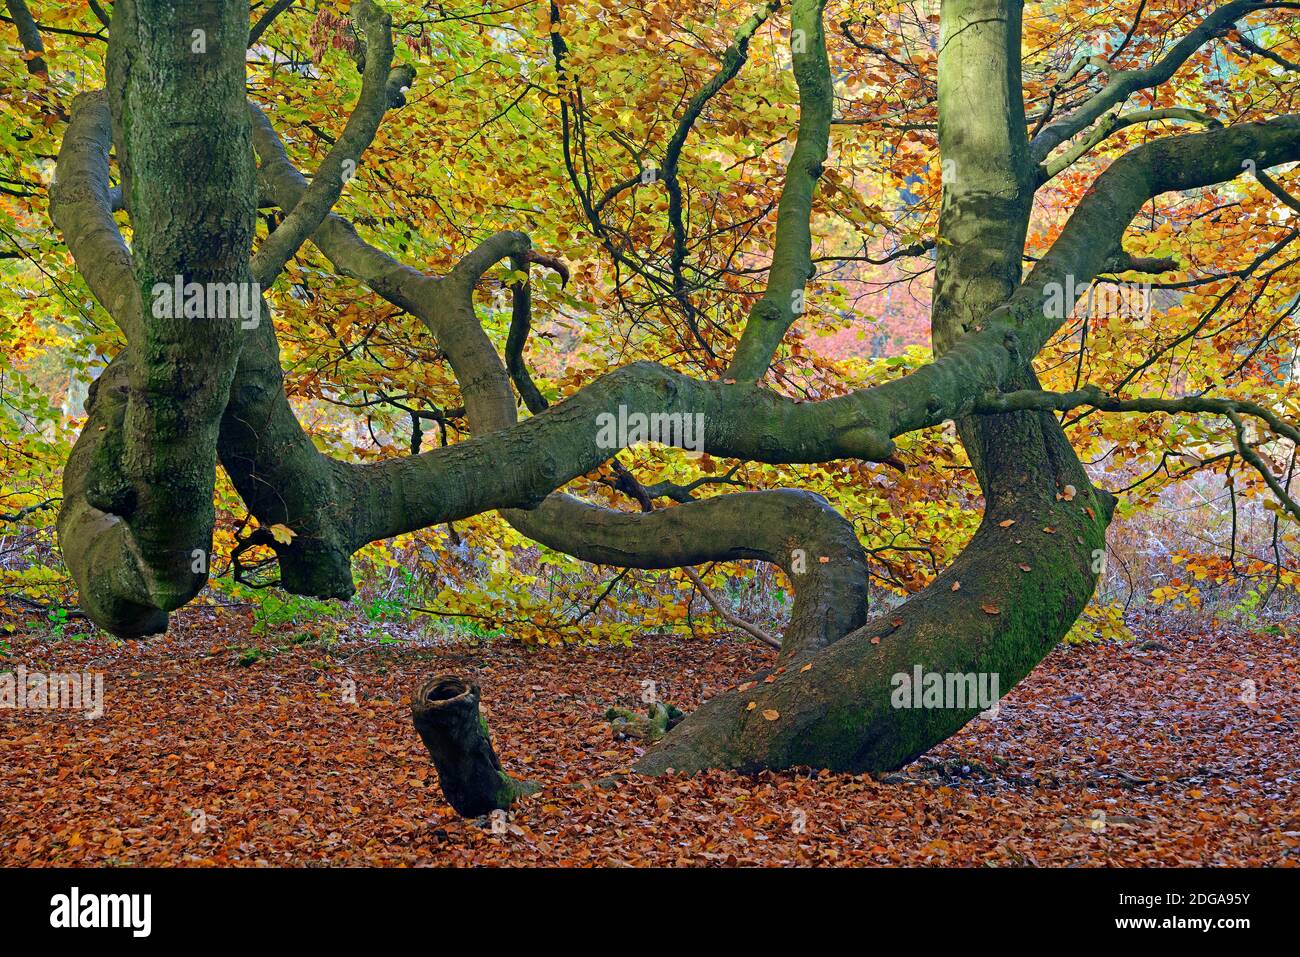 Bemooster Stamm einer alten Eiche (Fagus) im Herbst, verfaerbte Blaetter im Gegenlicht, Urwald Sababurg, Hesse, Germany, Europe Banque D'Images